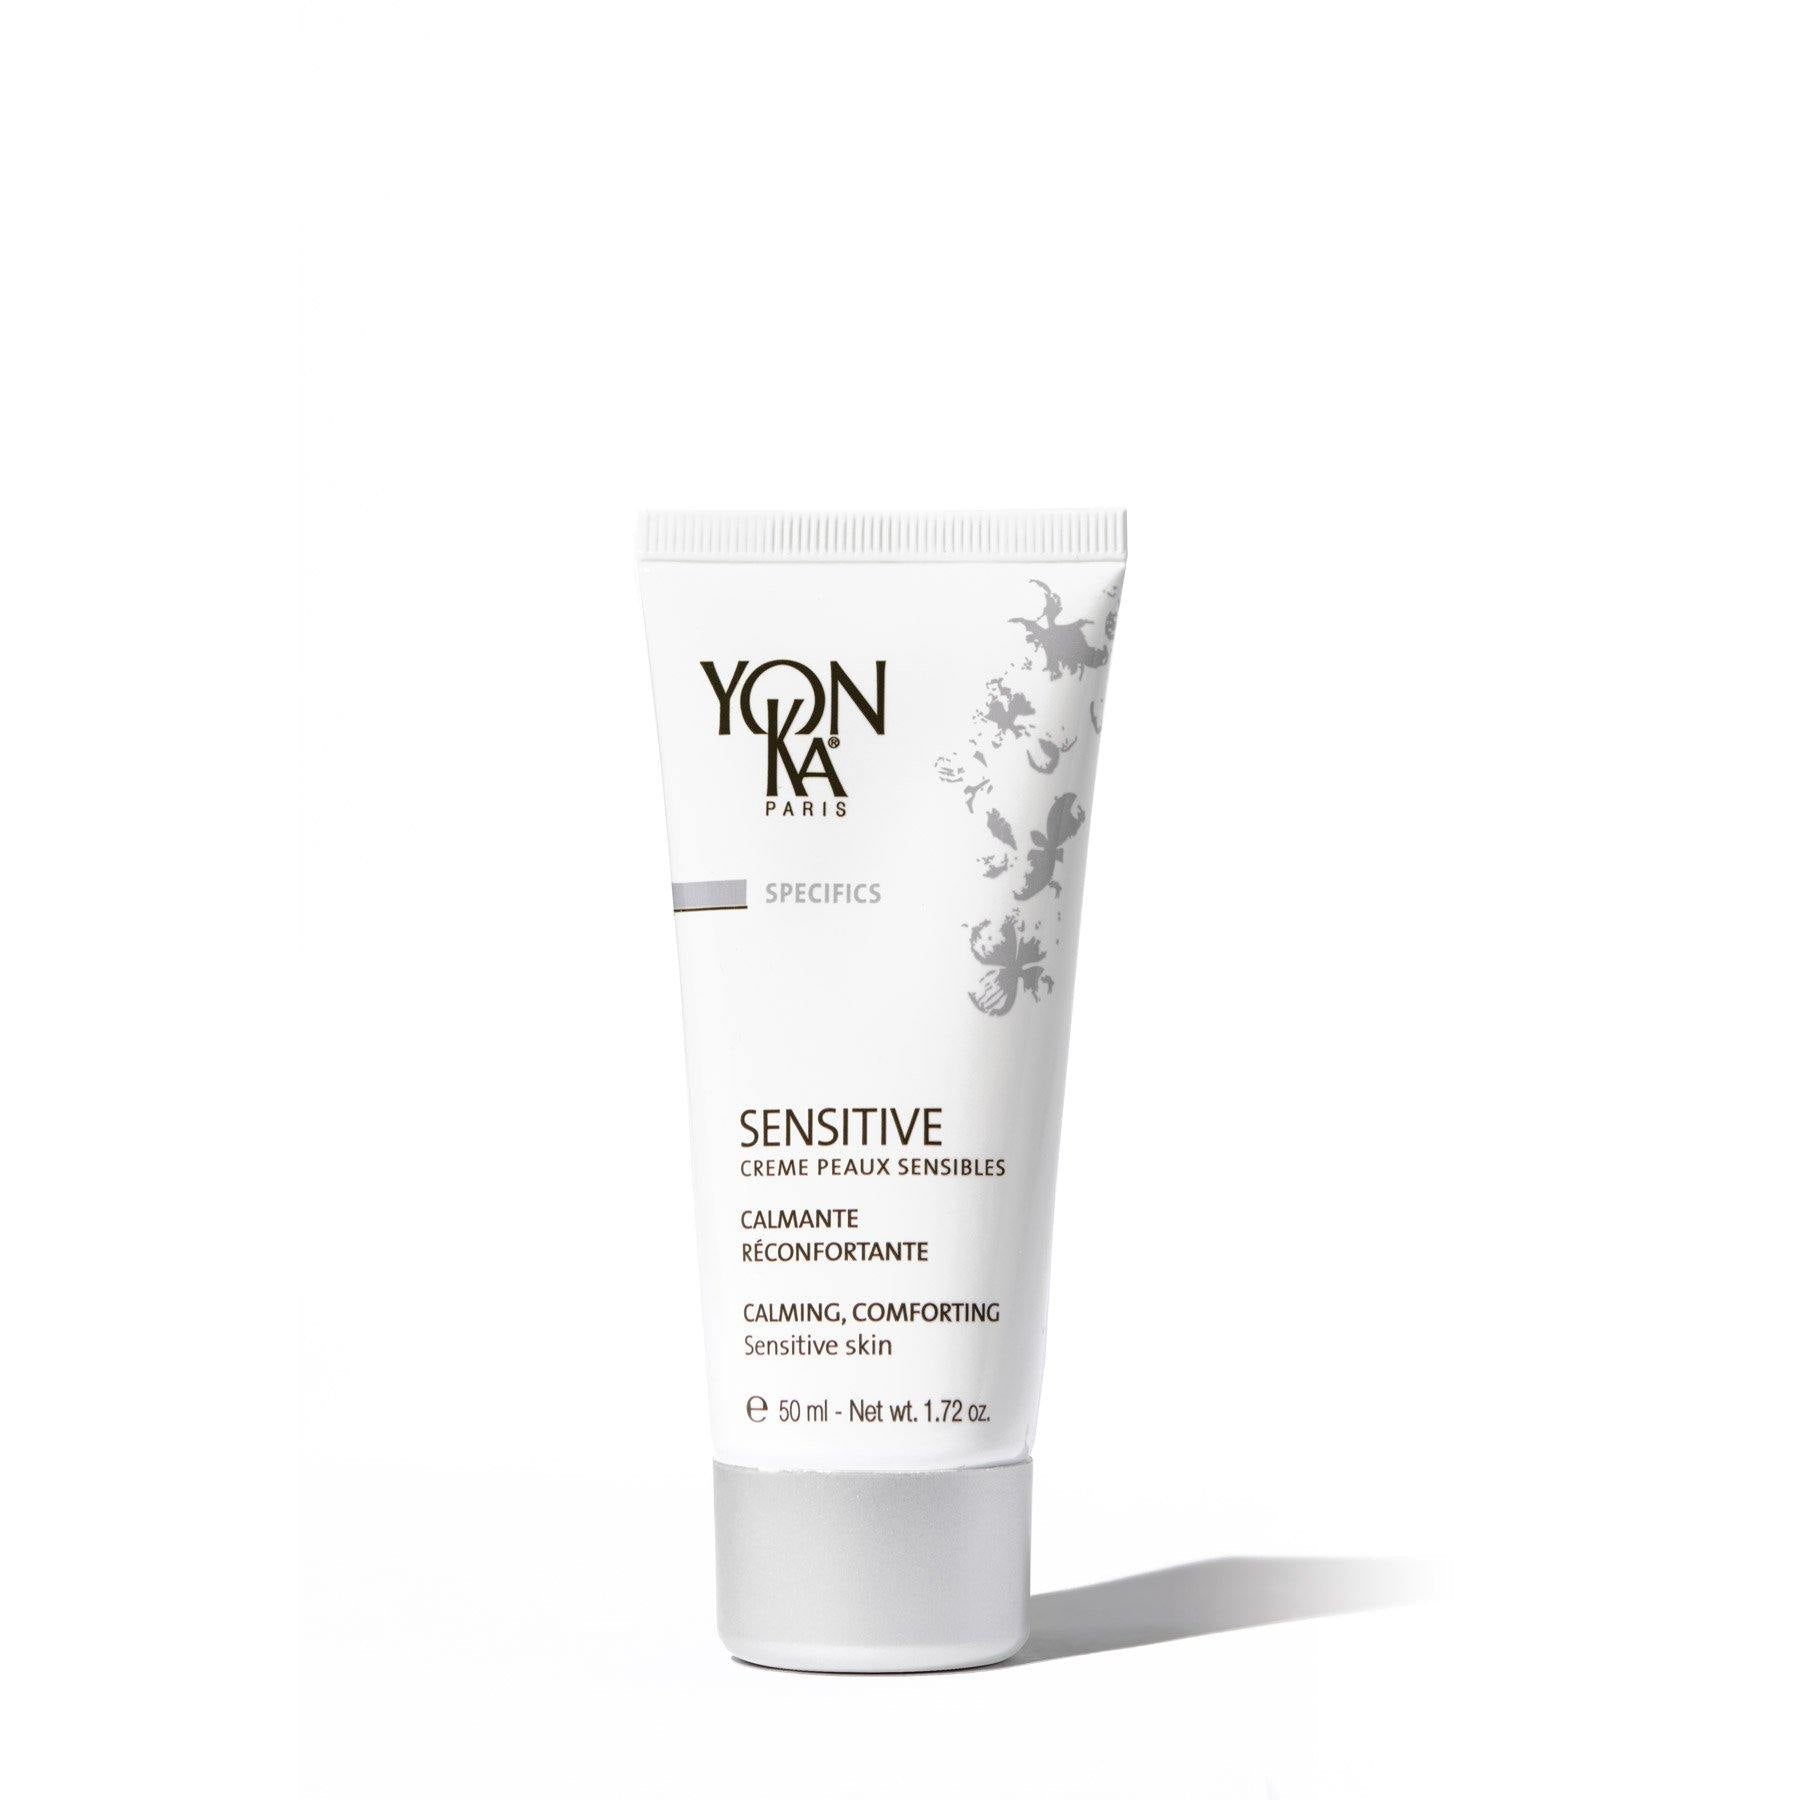 SENSITIVE crème peau sensible 50ml - Yonka - 53 Karat